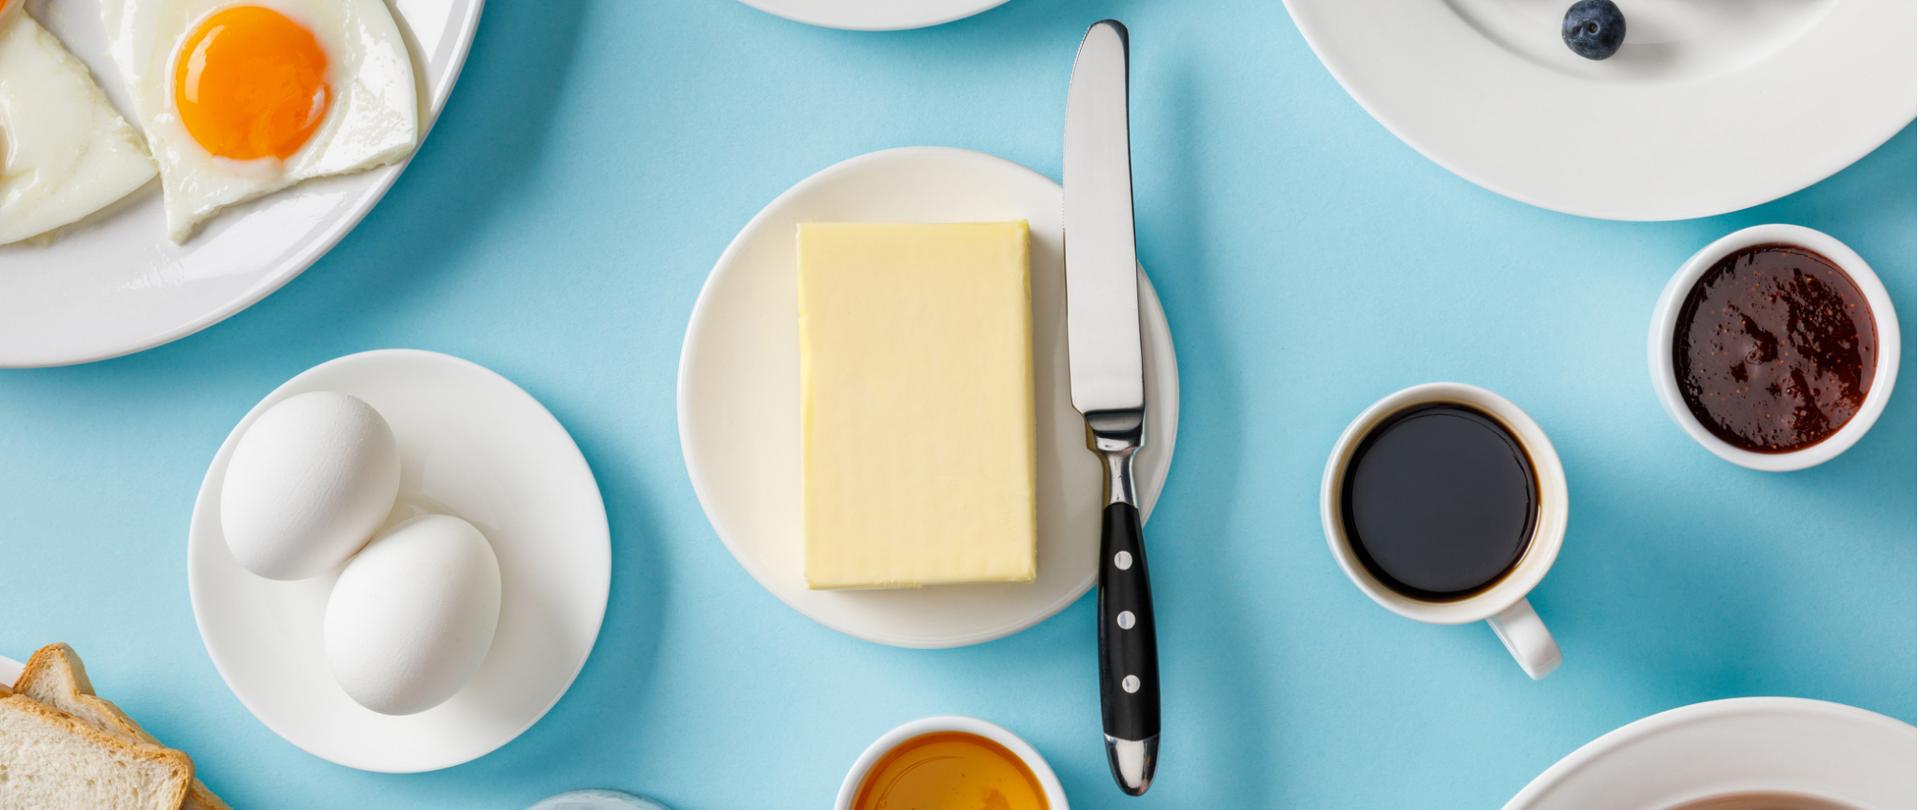 Na zdjęciu w centrum na talerzyku znajduje się masło a obok nóż. Wokół są jajka, tosty, borówki i kawa. Tło jest niebieskie.